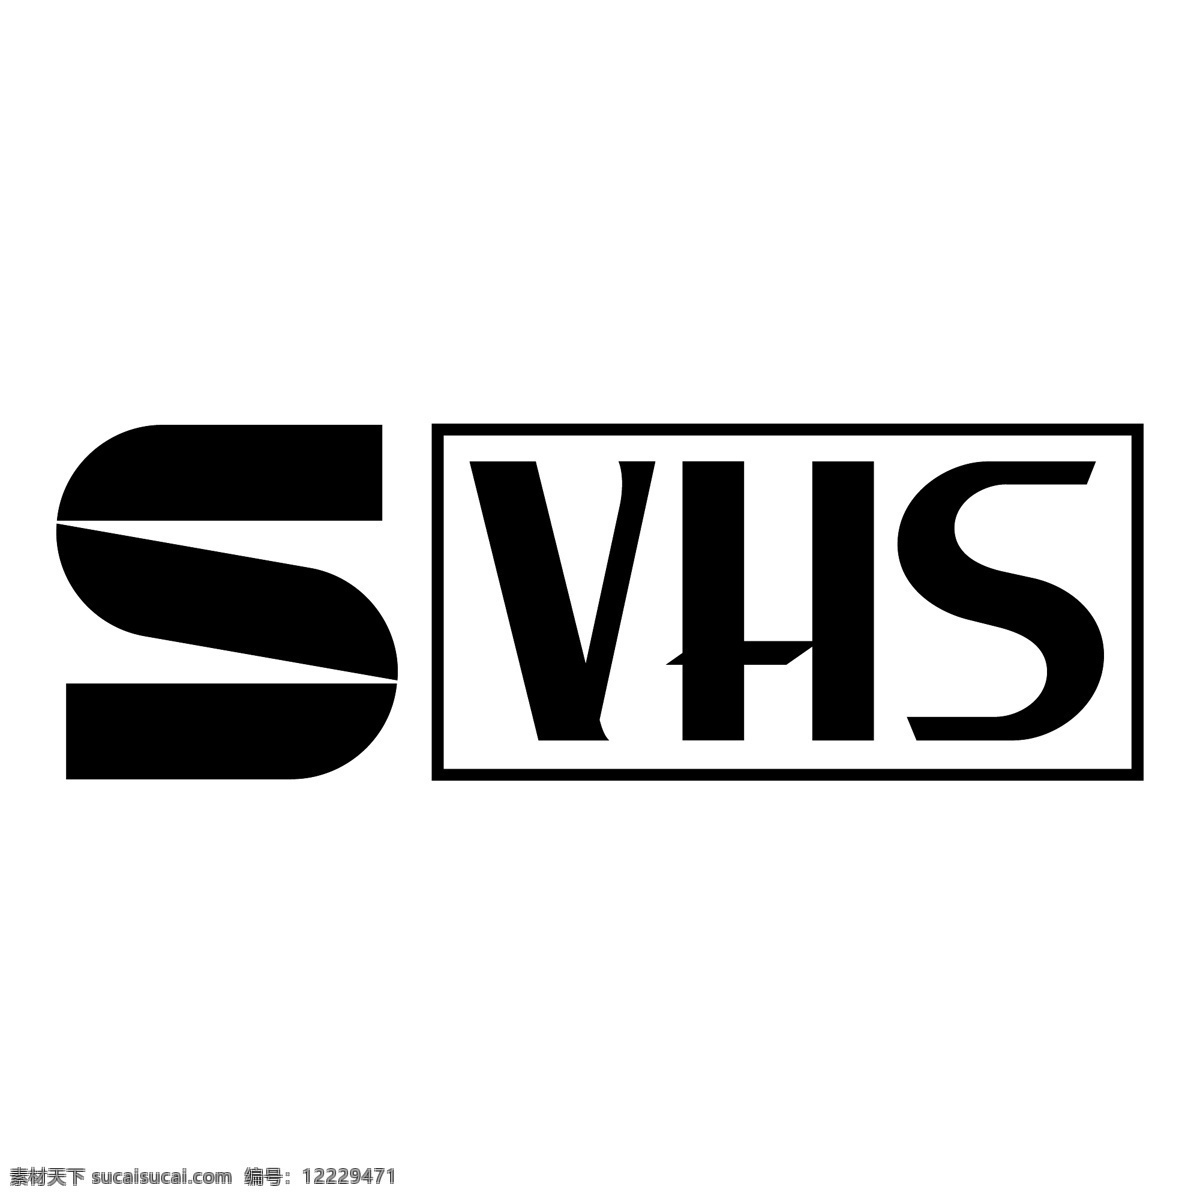 录像带 svhs svhs标志 标识为免费 psd源文件 logo设计